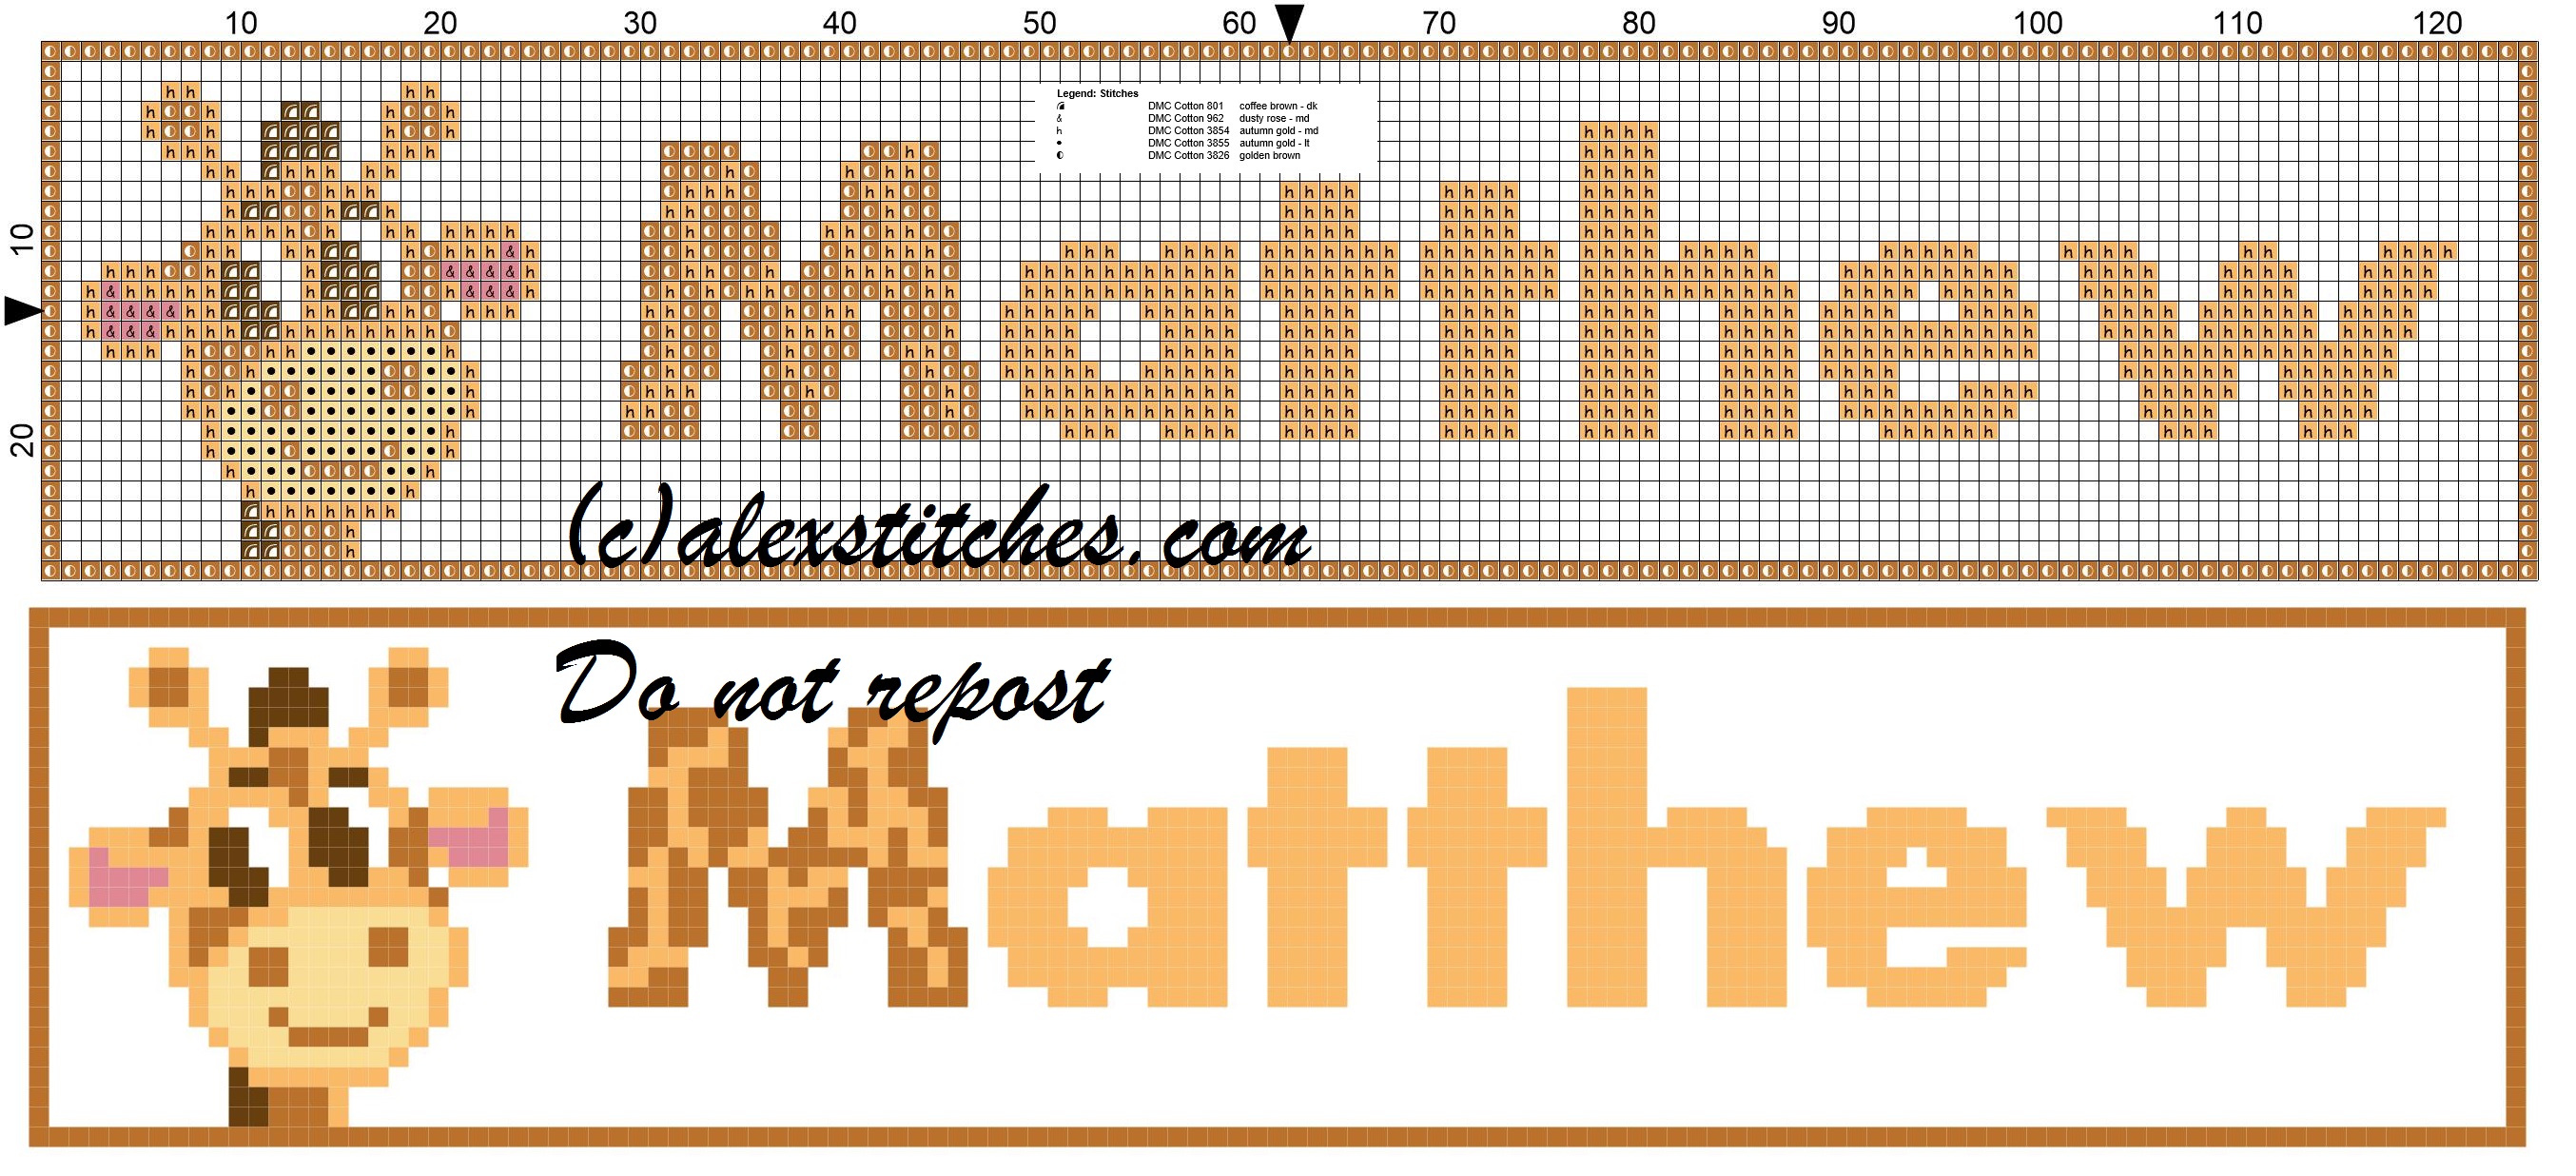 Matthew name with giraffe cross stitch pattern